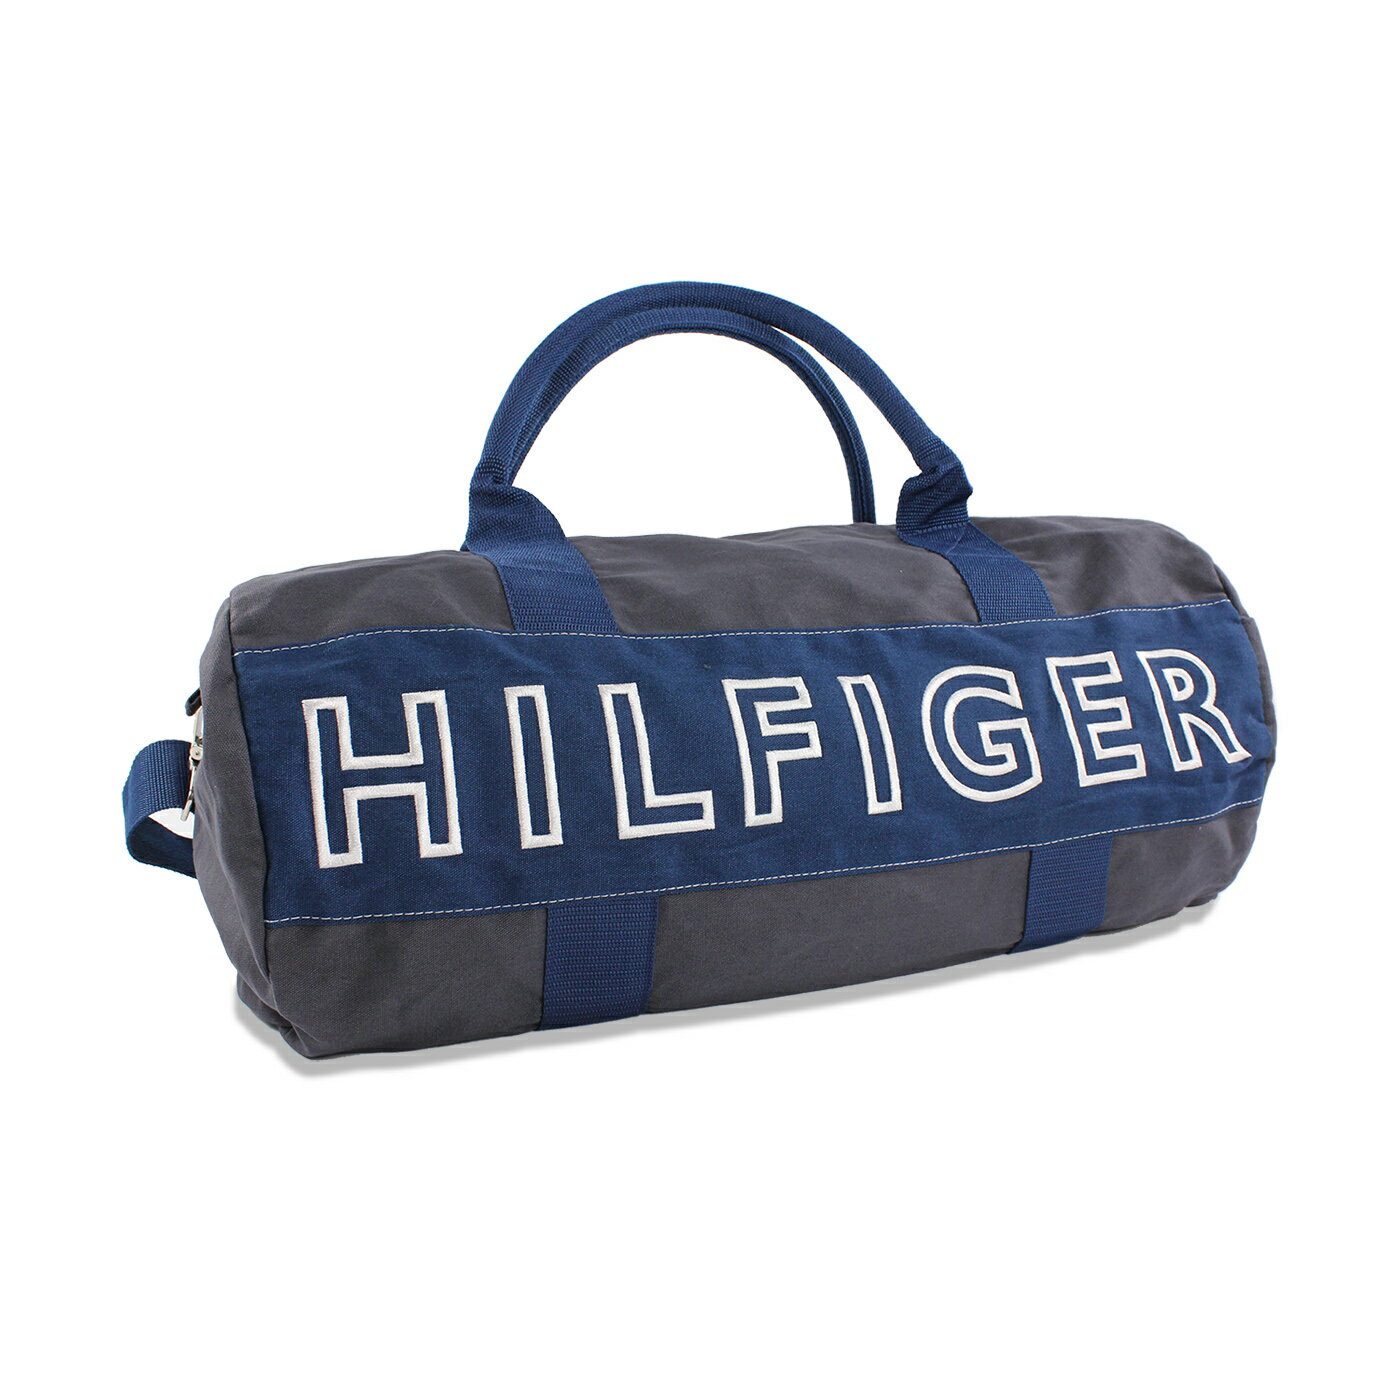 美國百分百【Tommy Hilfiger】旅行袋 TH 圓筒包 運動包 側背包 出國 男包 女包 深灰 青藍 F466